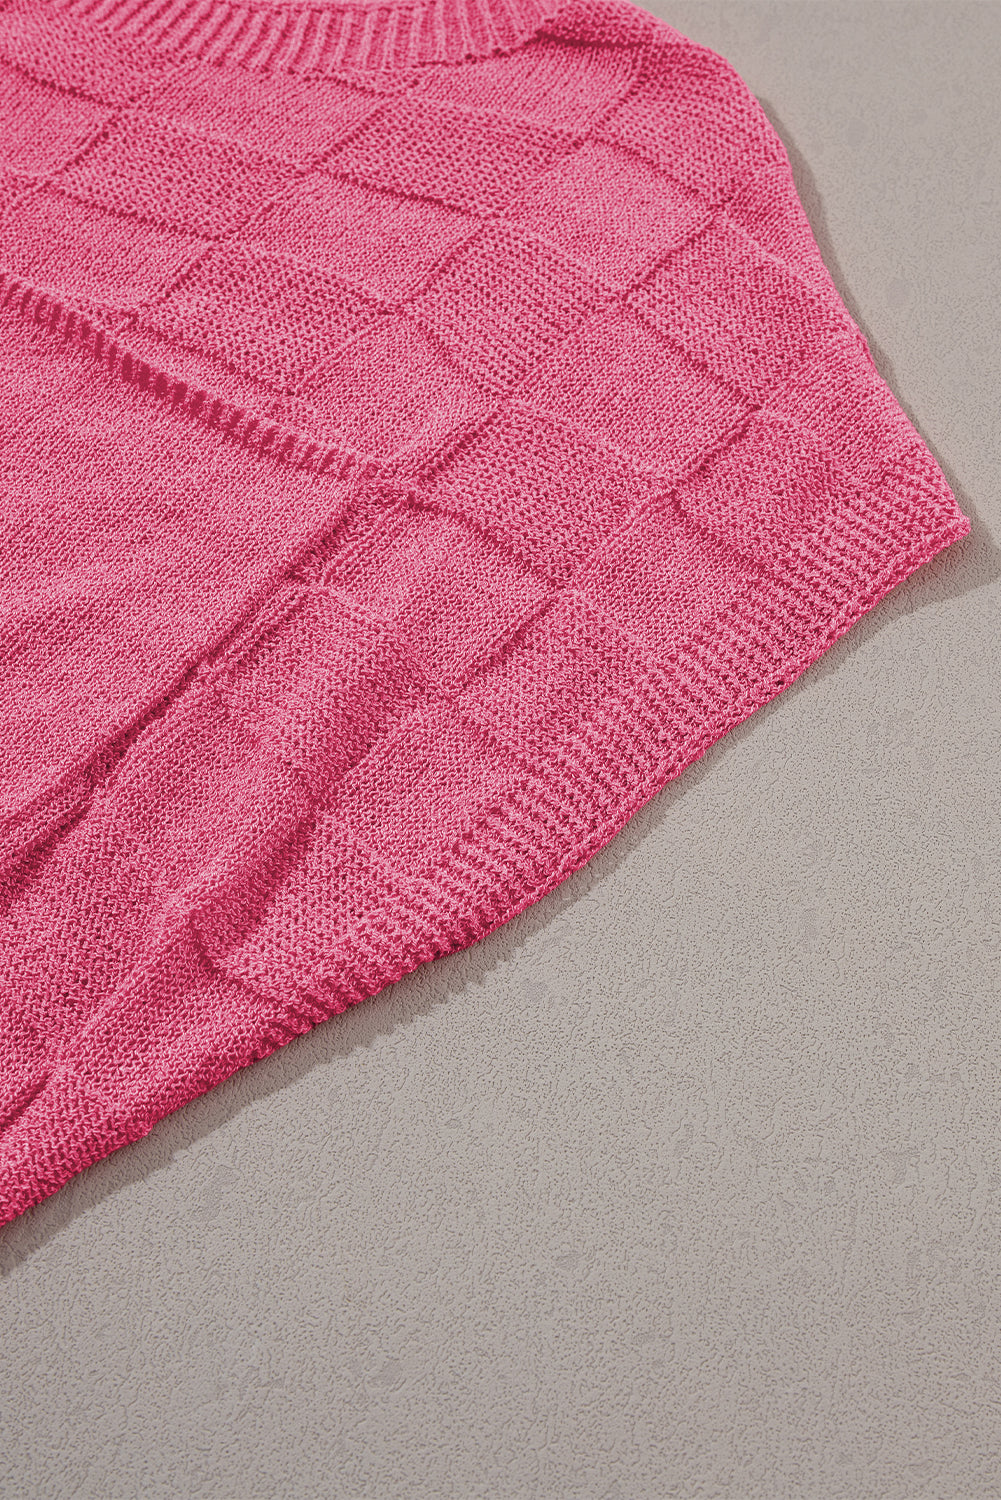 Maglione a maniche corte lavorato a maglia testurizzata rosa brillante